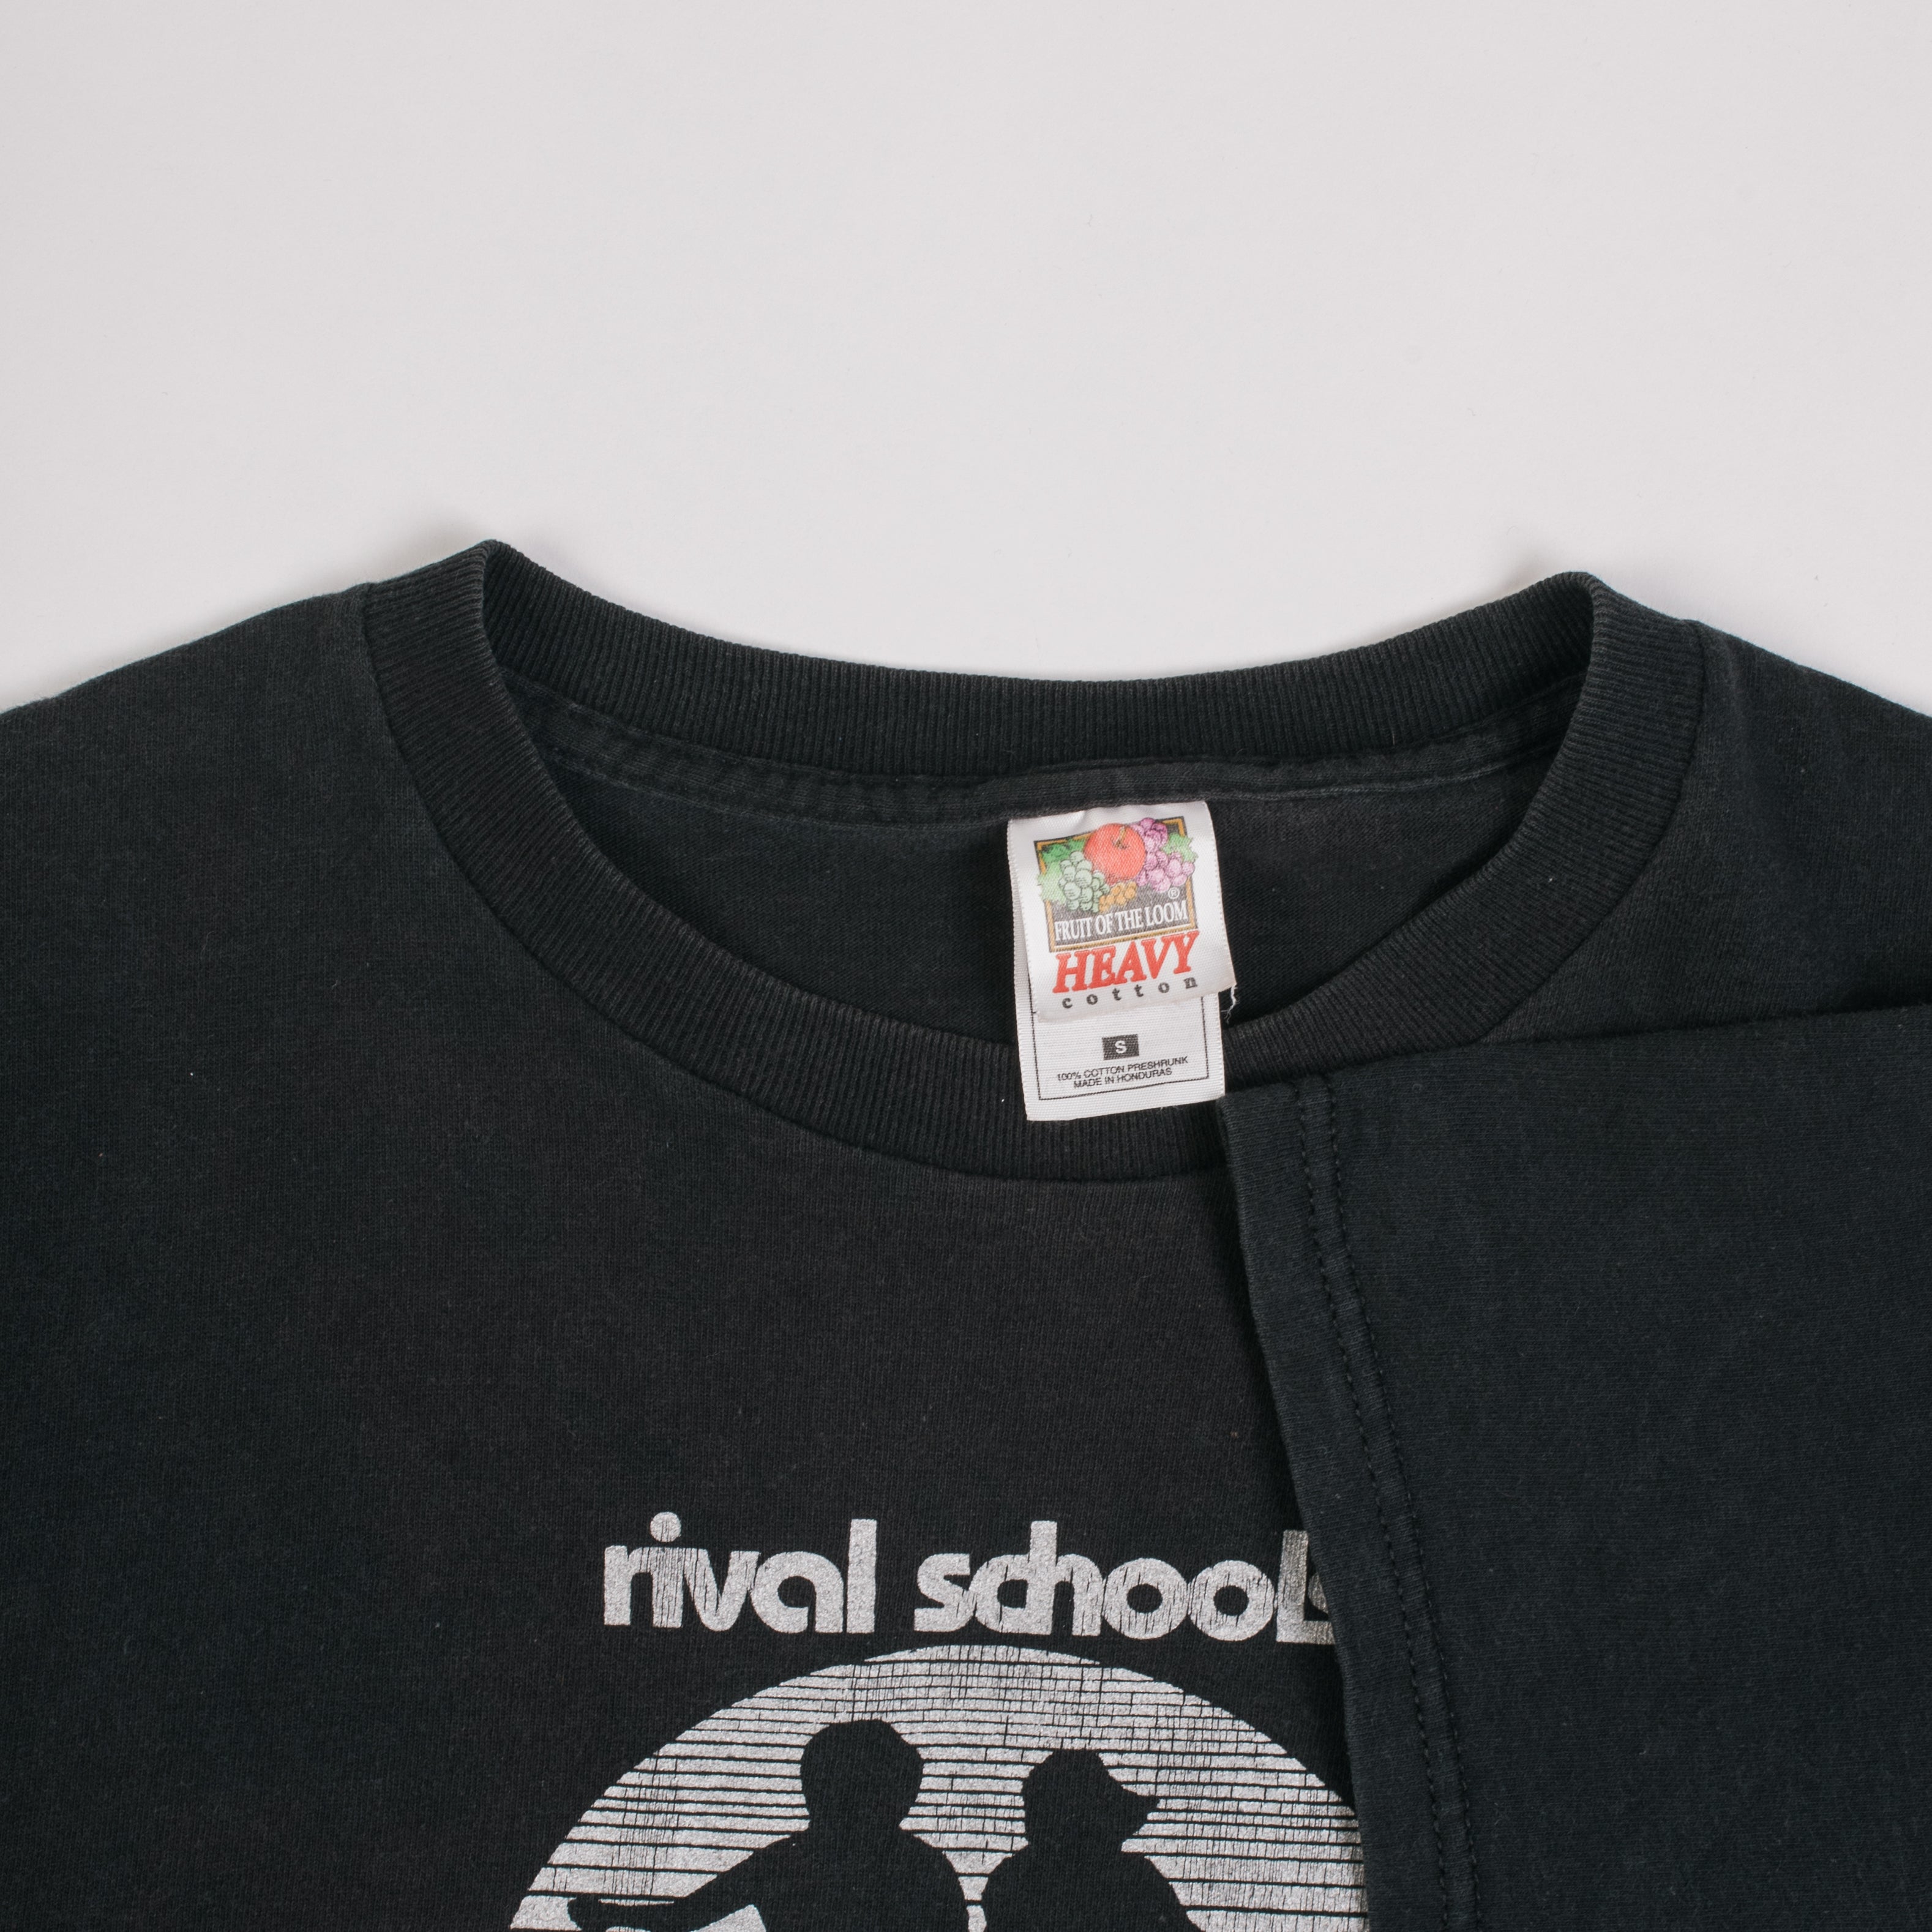 rival schools(walter)Tシャツ 旧企画 グラデーション柄